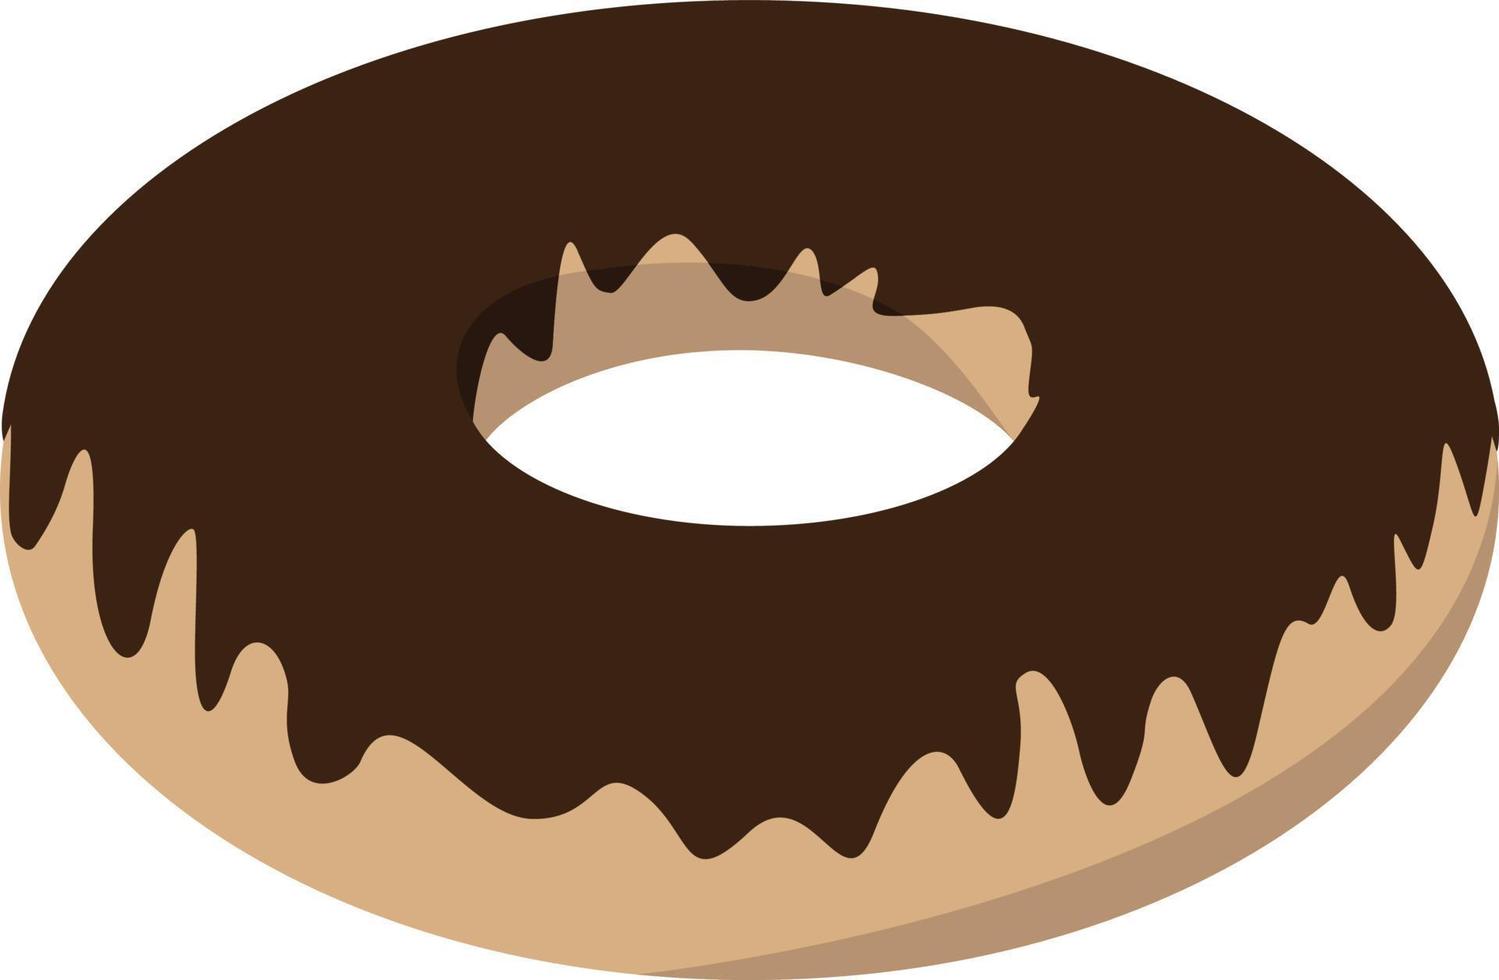 Donut de chocolate, ilustración, vector sobre fondo blanco.